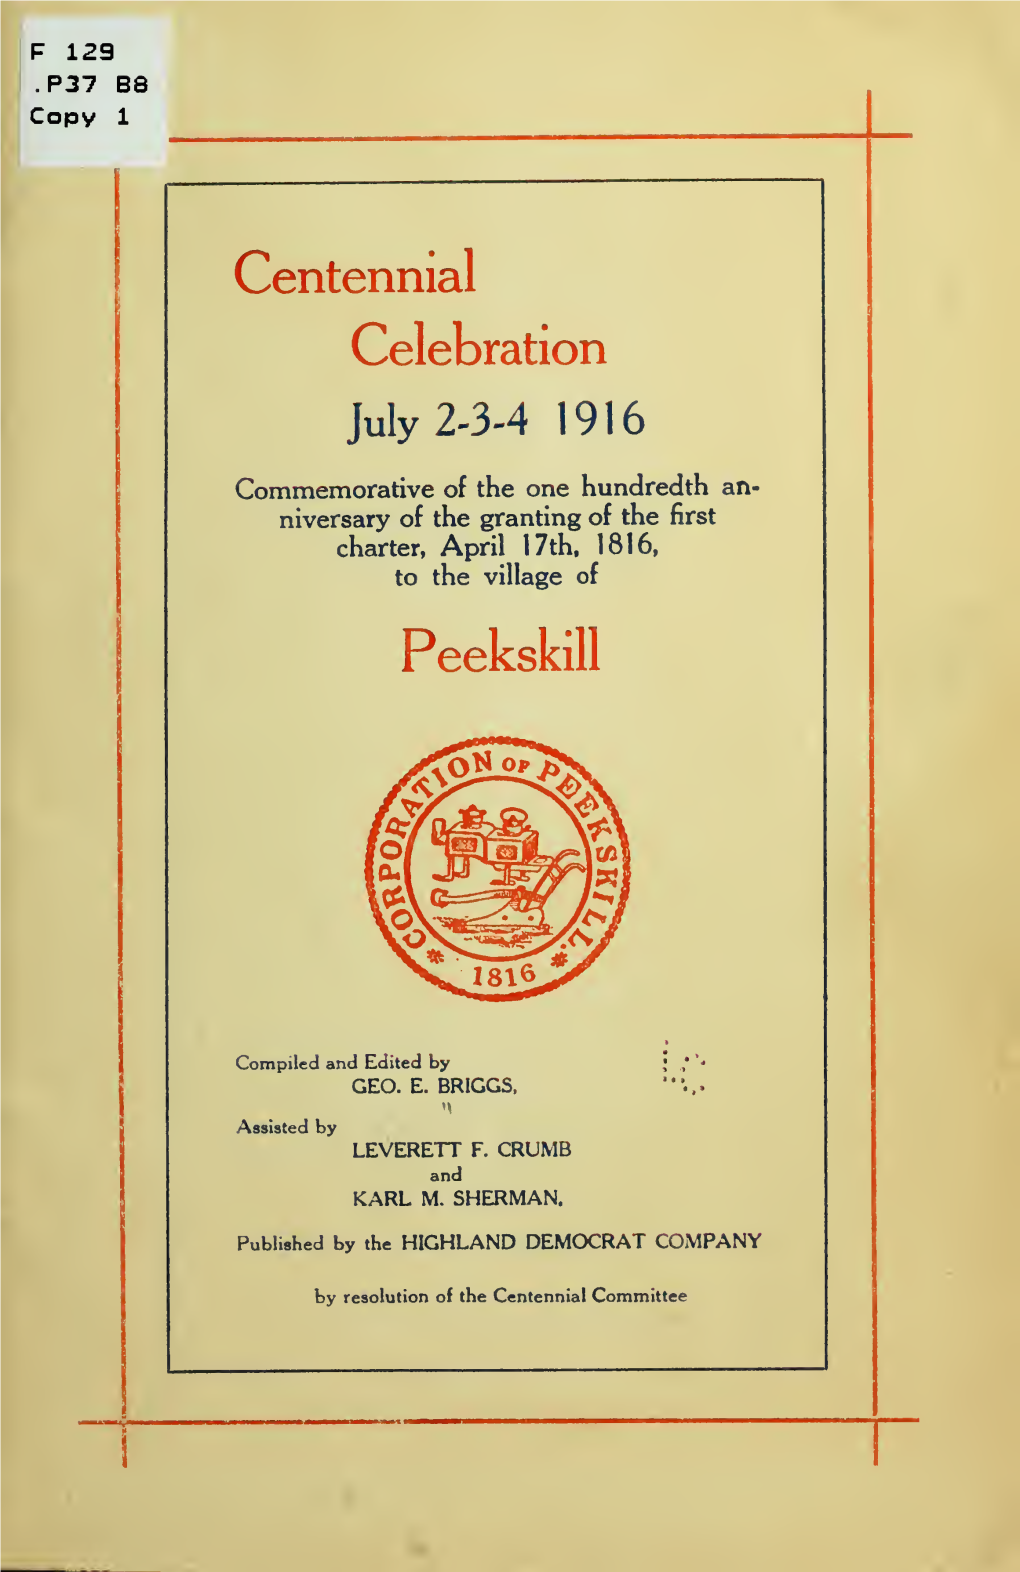 Centennial Celebration, July 2, 3, 4, 1916